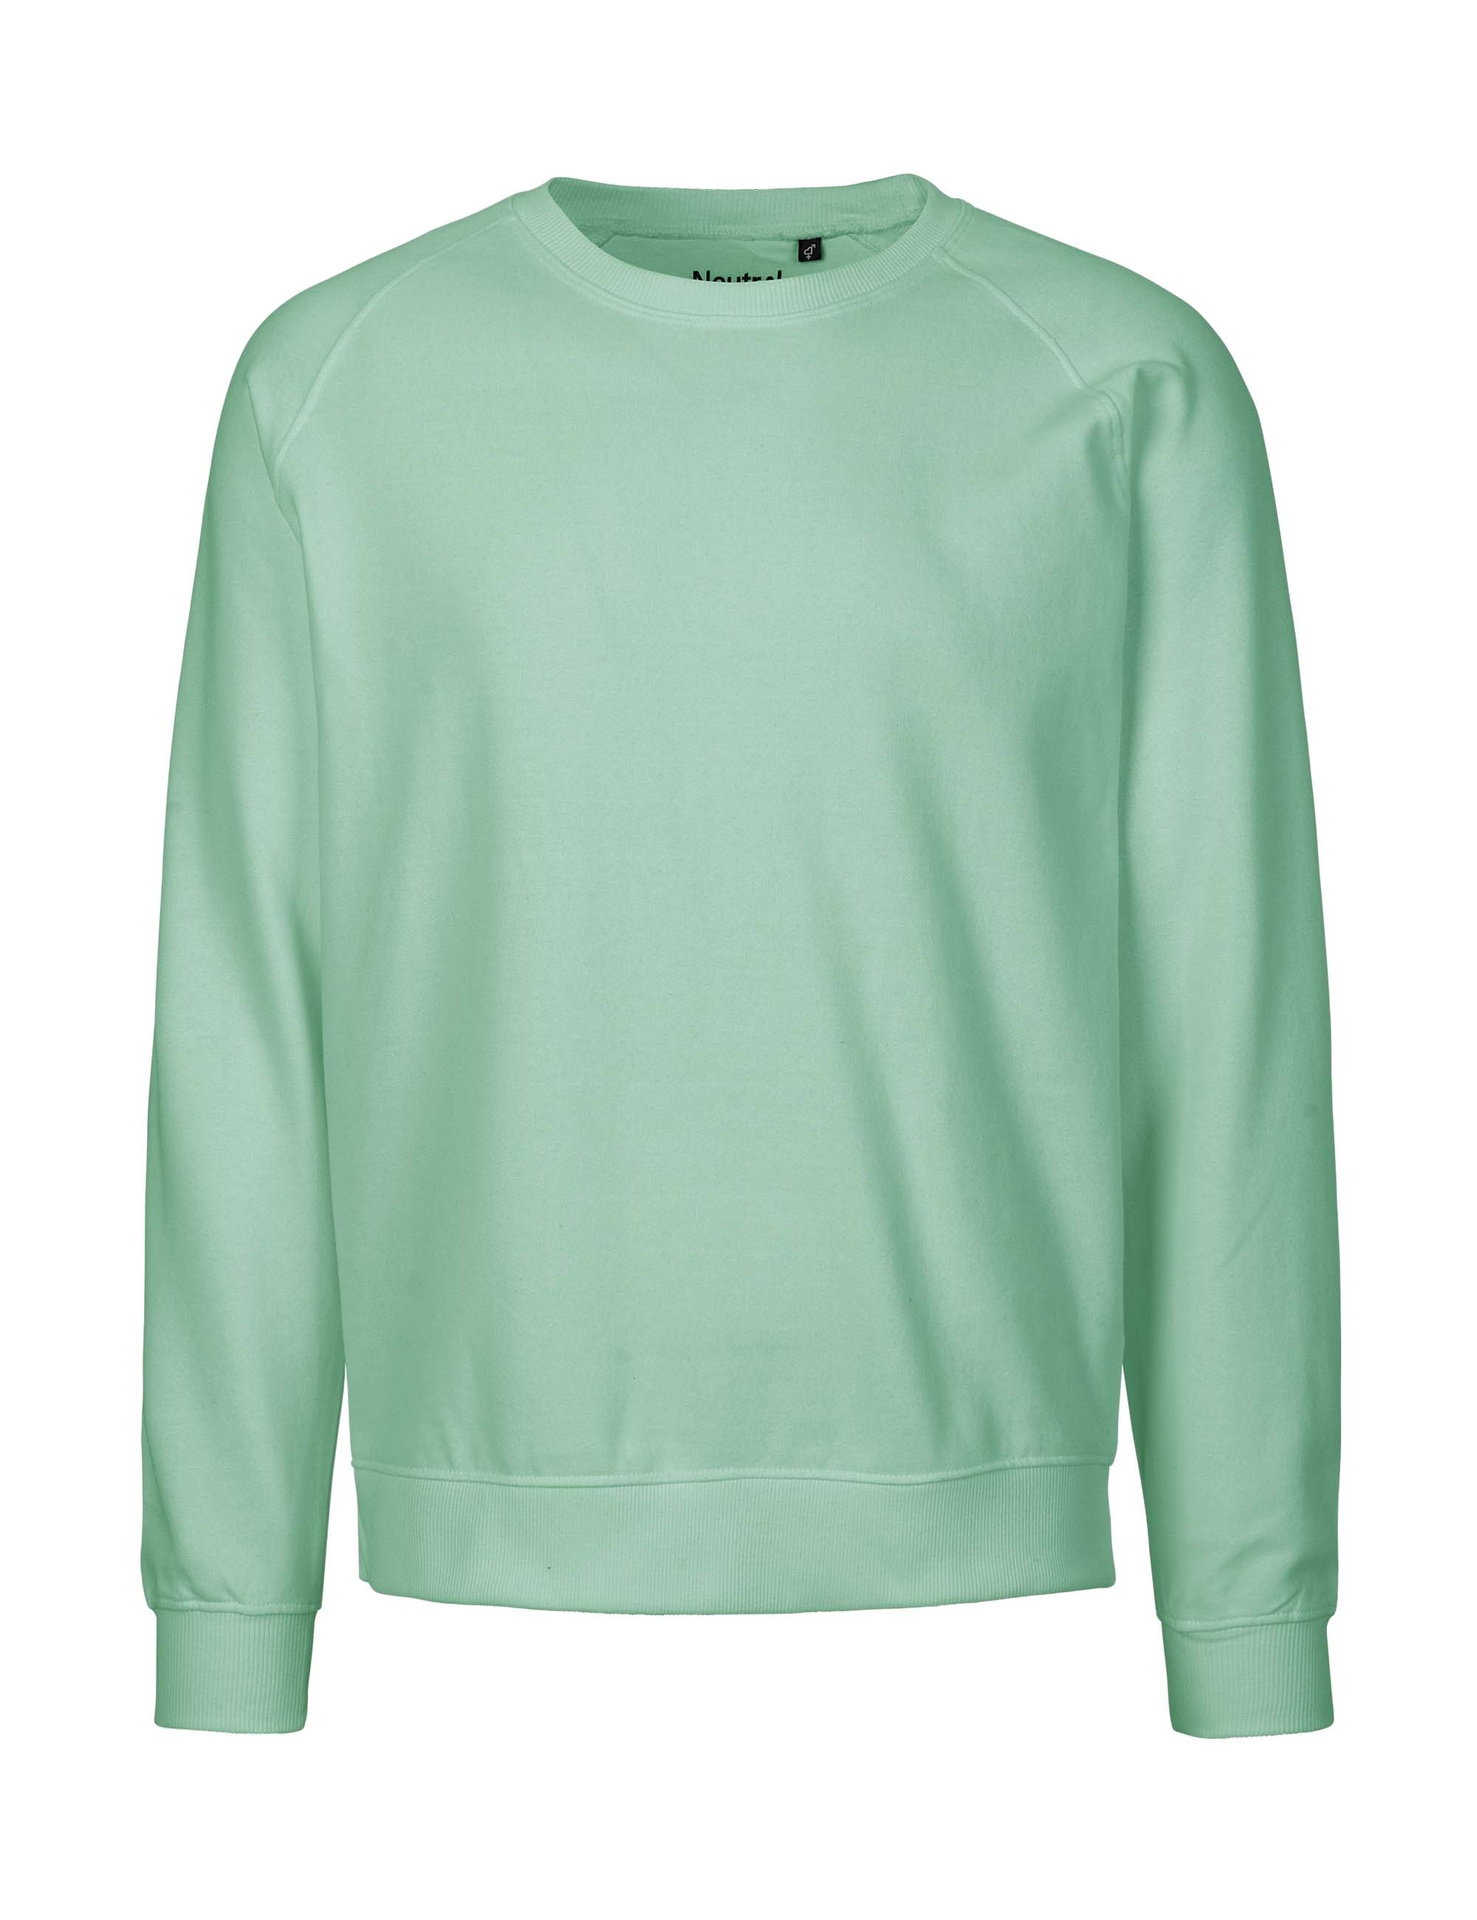 [PR/02830] Unisex Sweatshirt (Dusty Mint 40, 4XL)